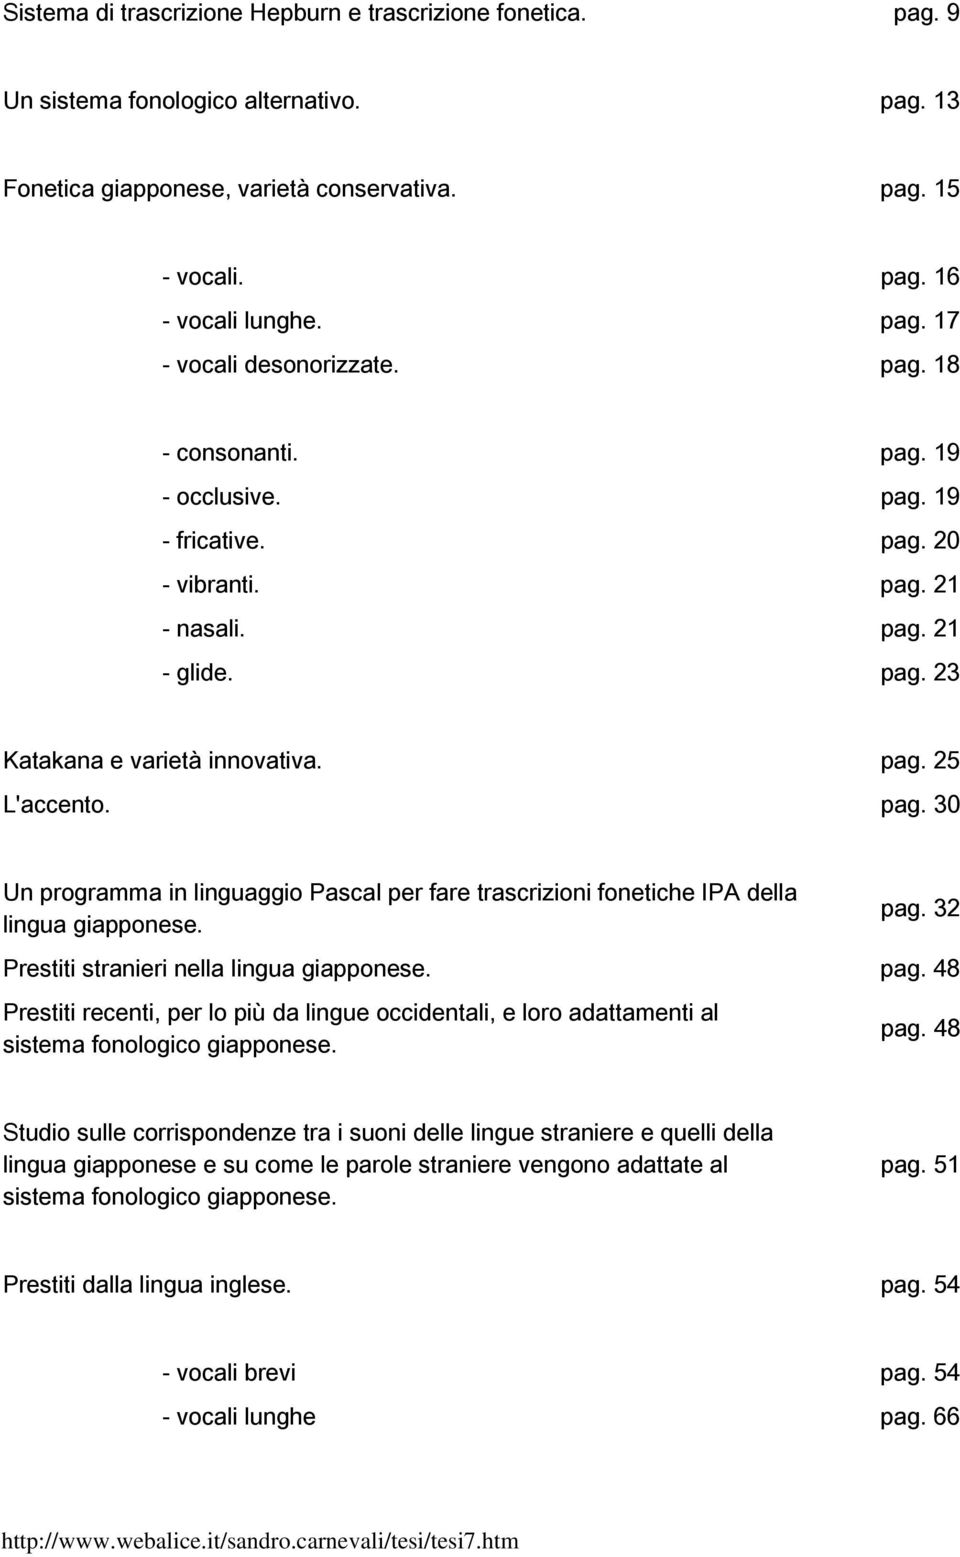 32 Prestiti stranieri nella lingua pag. 48 Prestiti recenti, per lo più da lingue occidentali, e loro adattamenti al sistema fonologico pag.